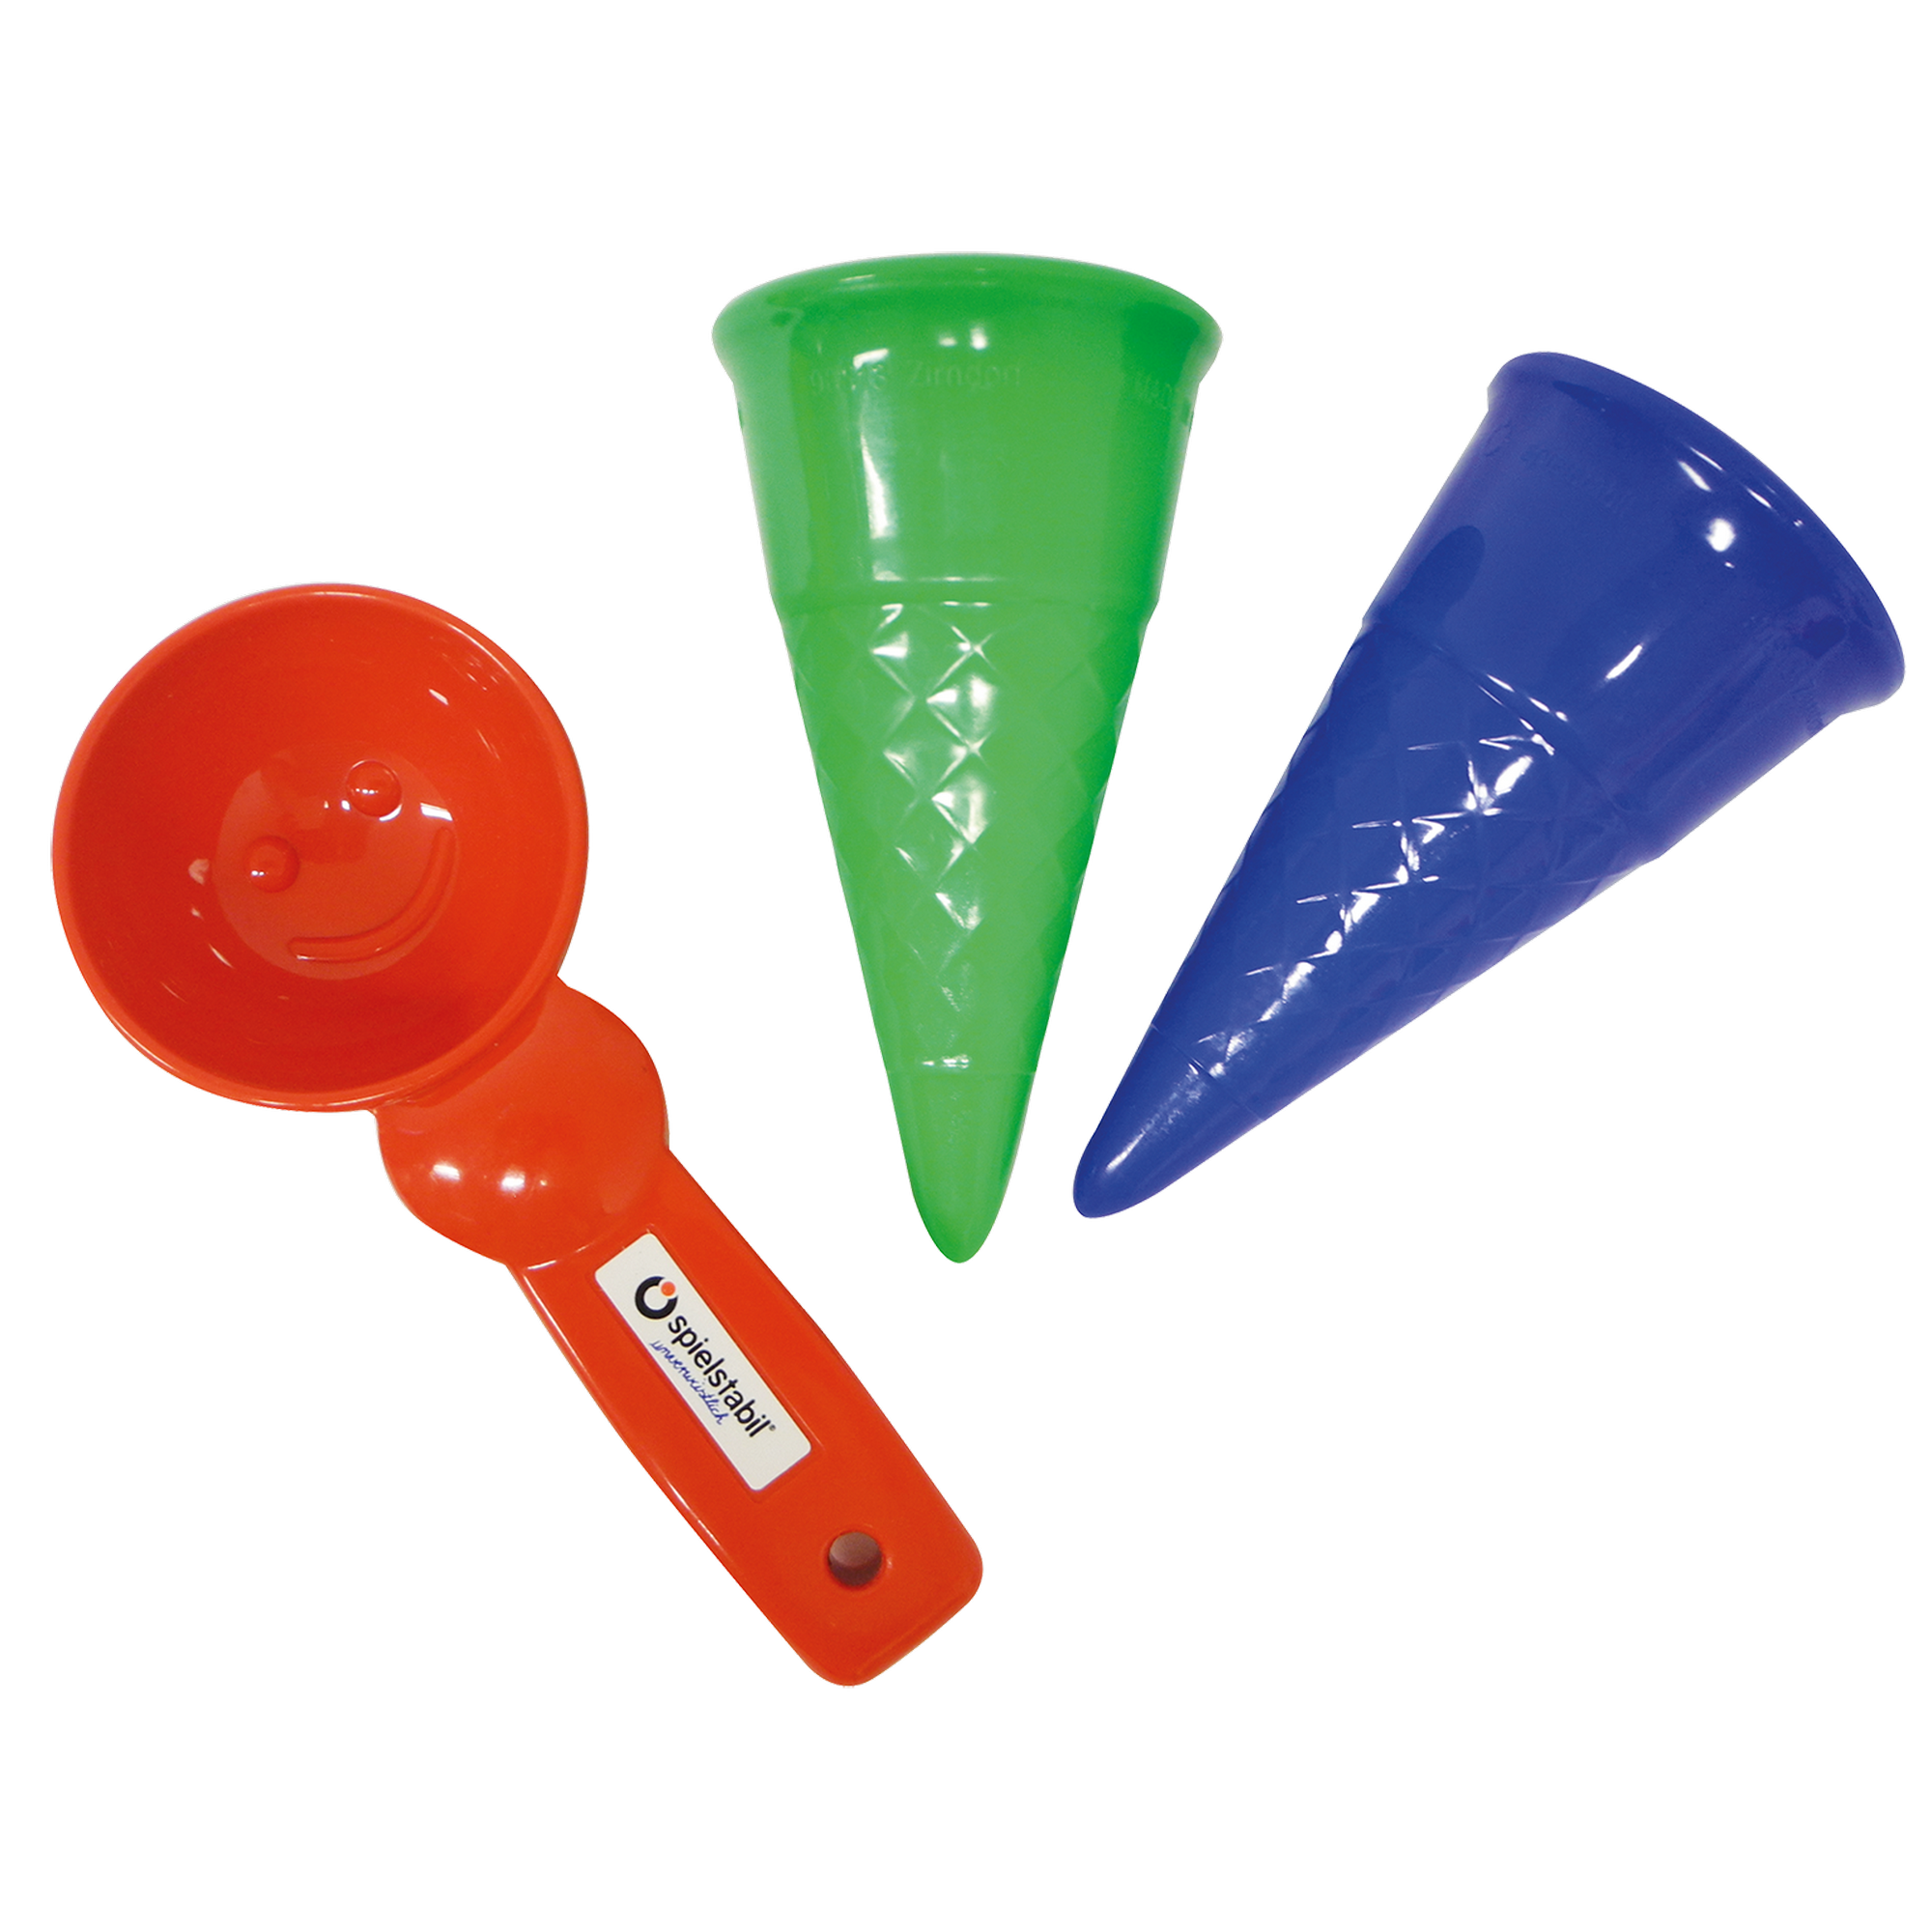 Spielzeug-Set 'Gelateria' 3-teilig im Netz rot/grün/blau + product picture